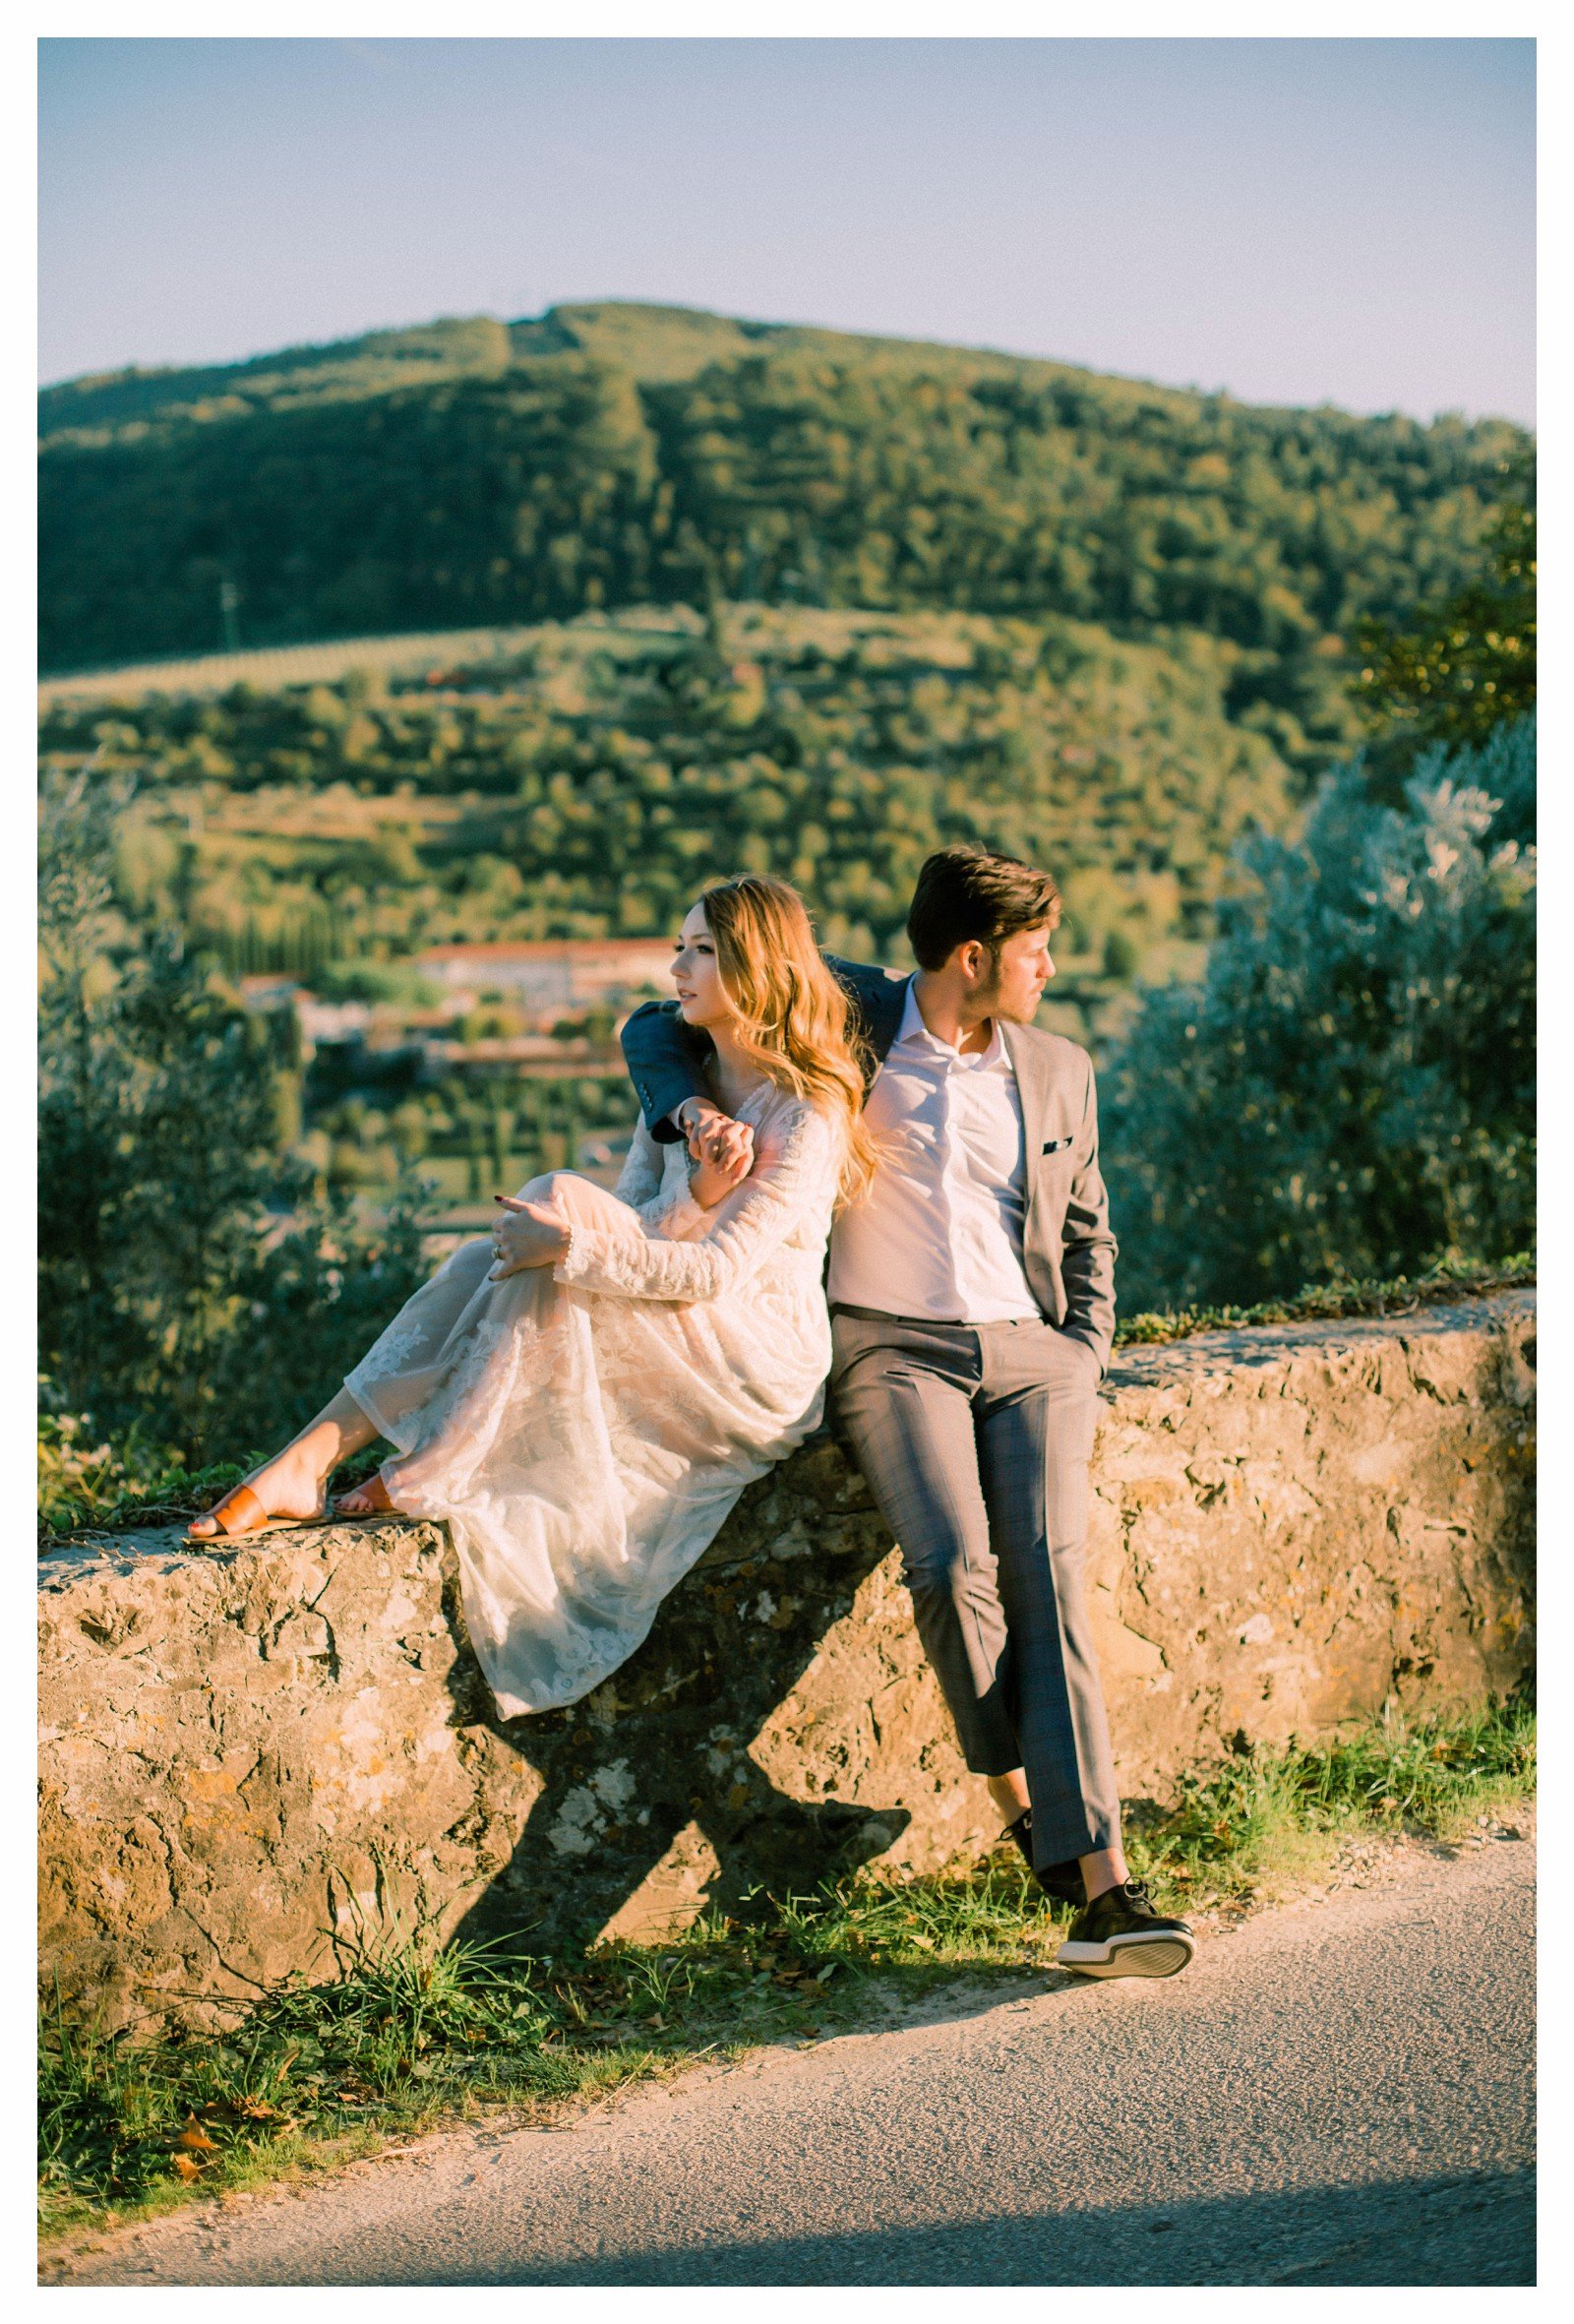 tuscany-countryside-val-dorcia-wedding-couple-photoshoot-photographer_0025.jpg